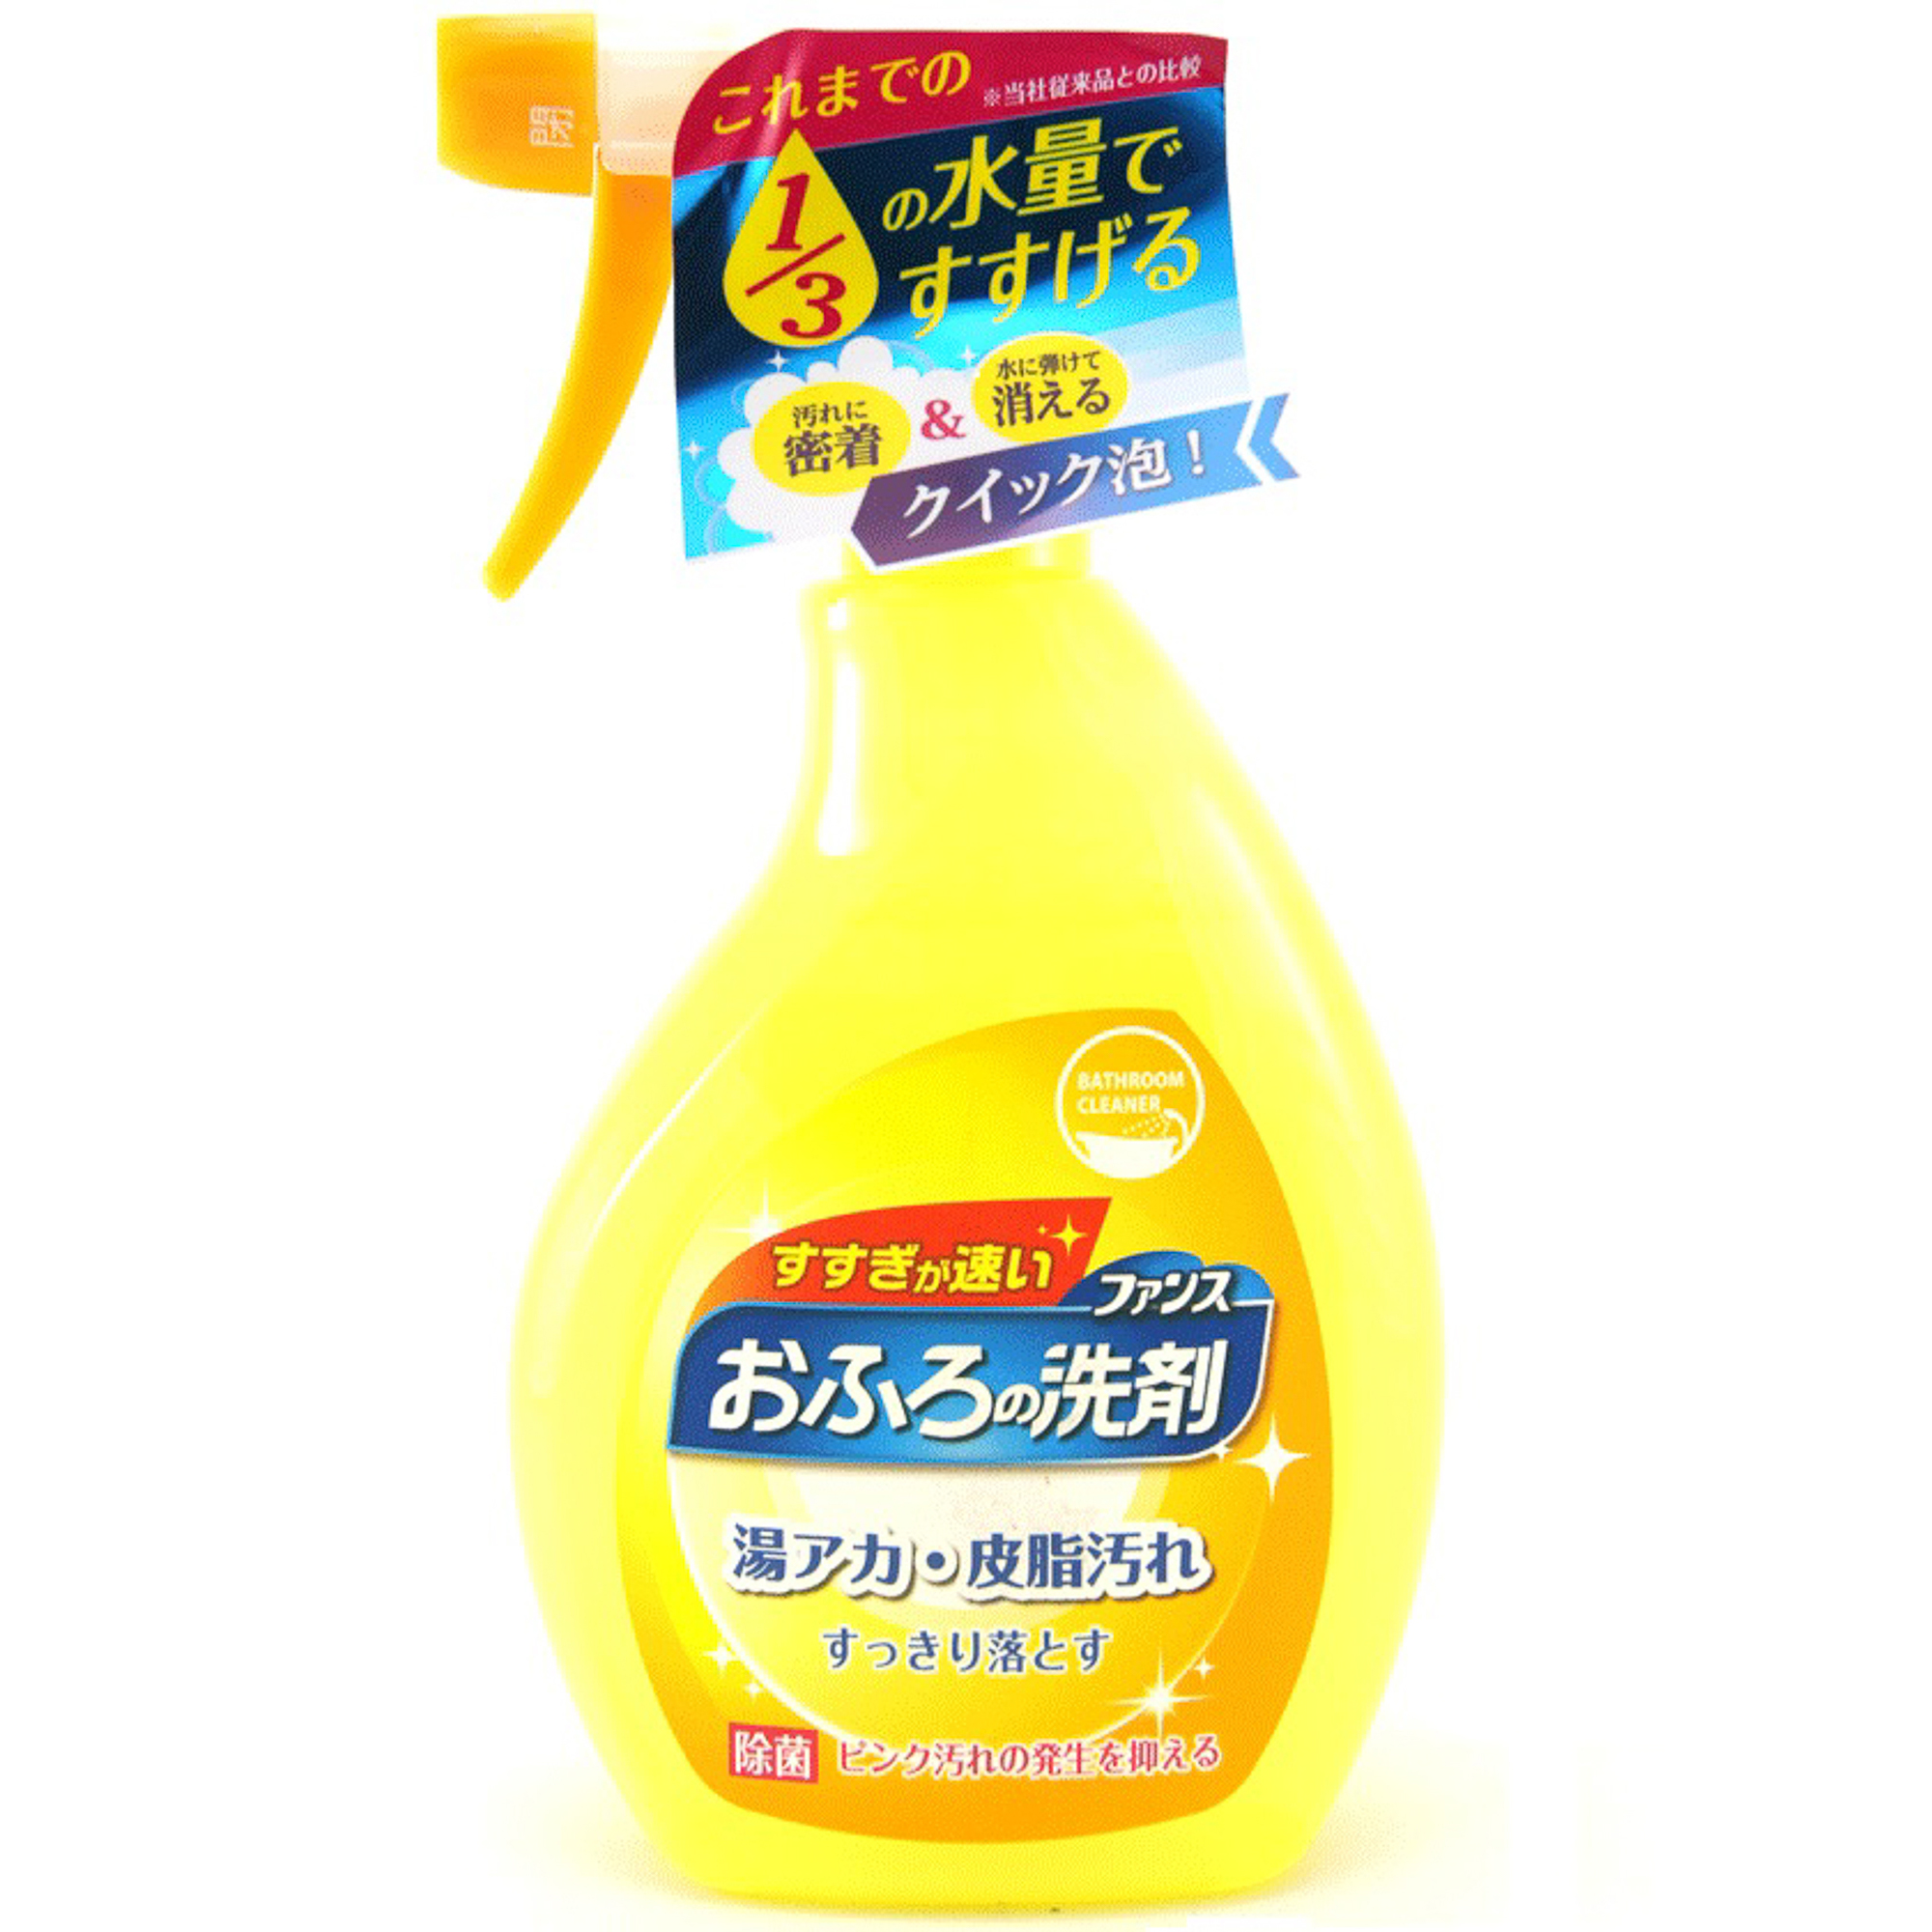 Спрей пенный Daiichi Ofuro для чистки в ванной комнате 380 мл